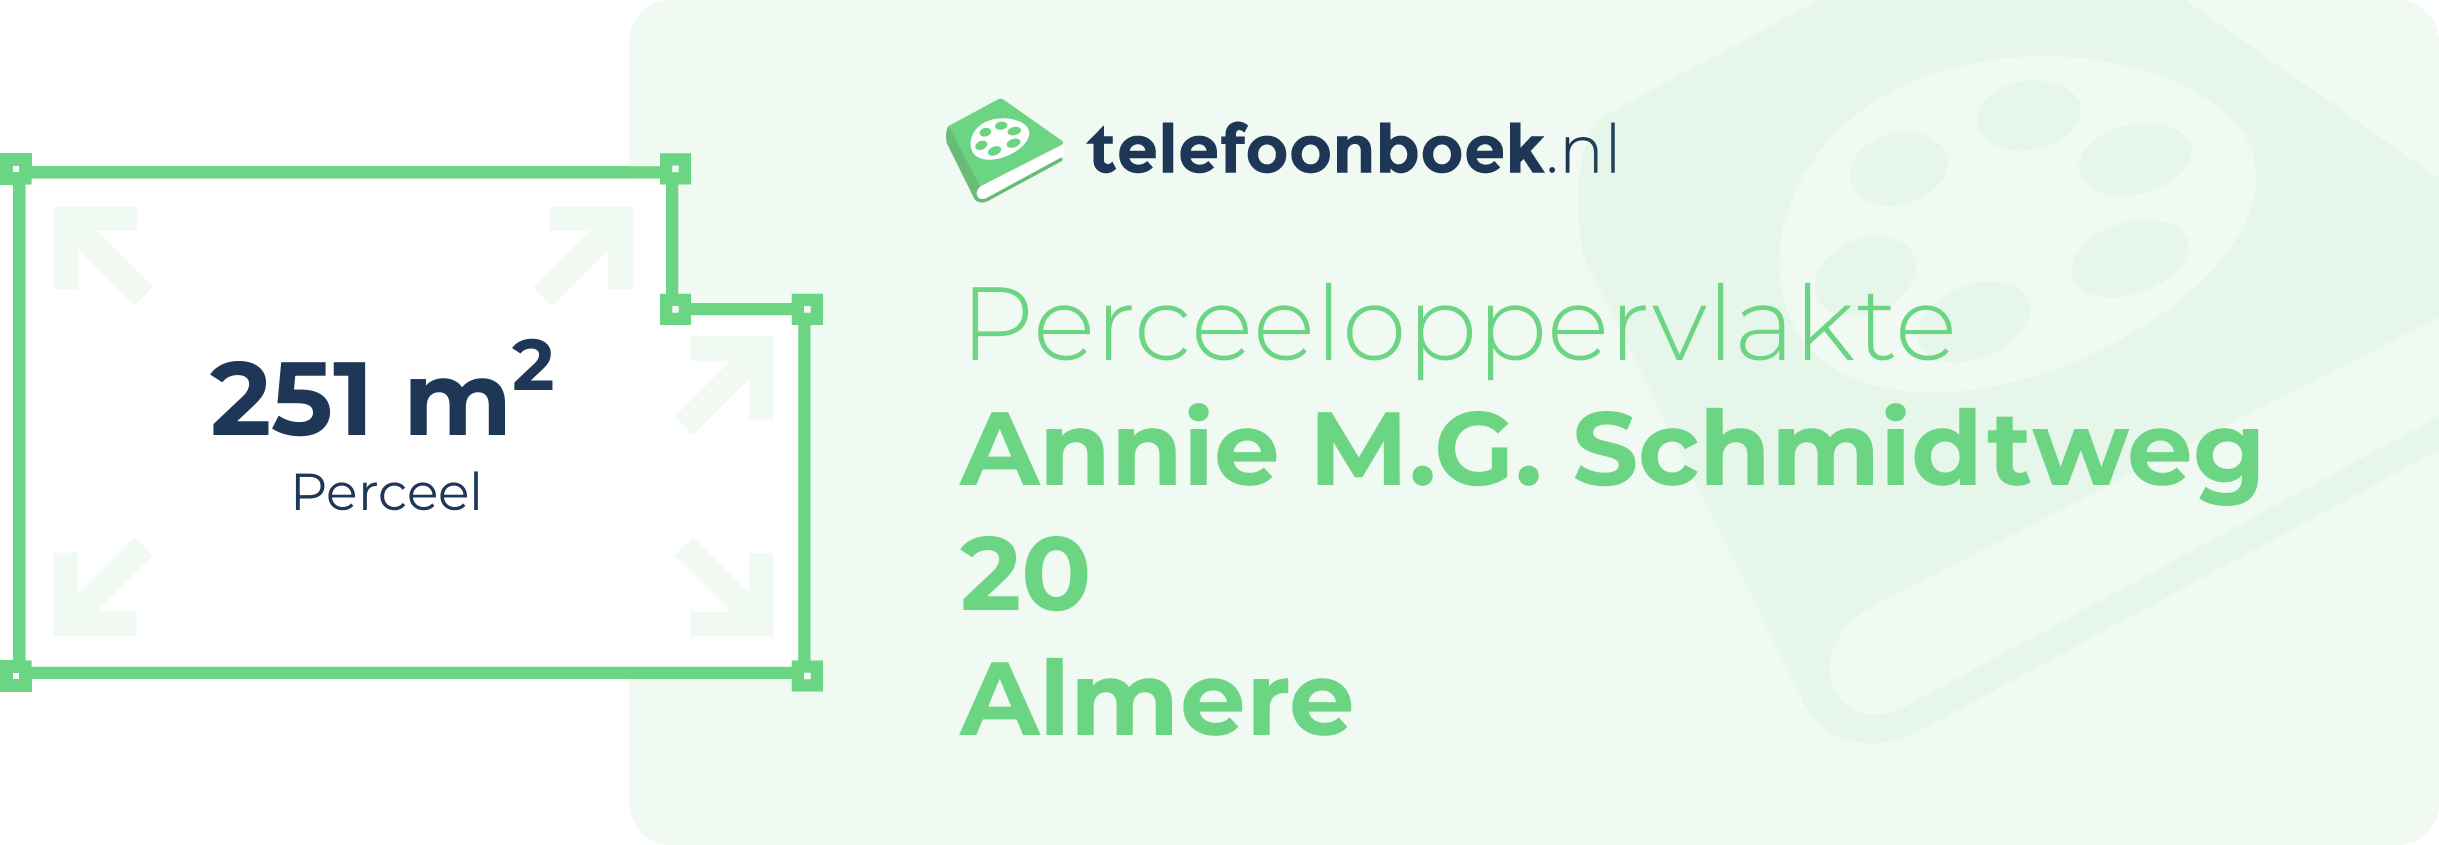 Perceeloppervlakte Annie M.G. Schmidtweg 20 Almere